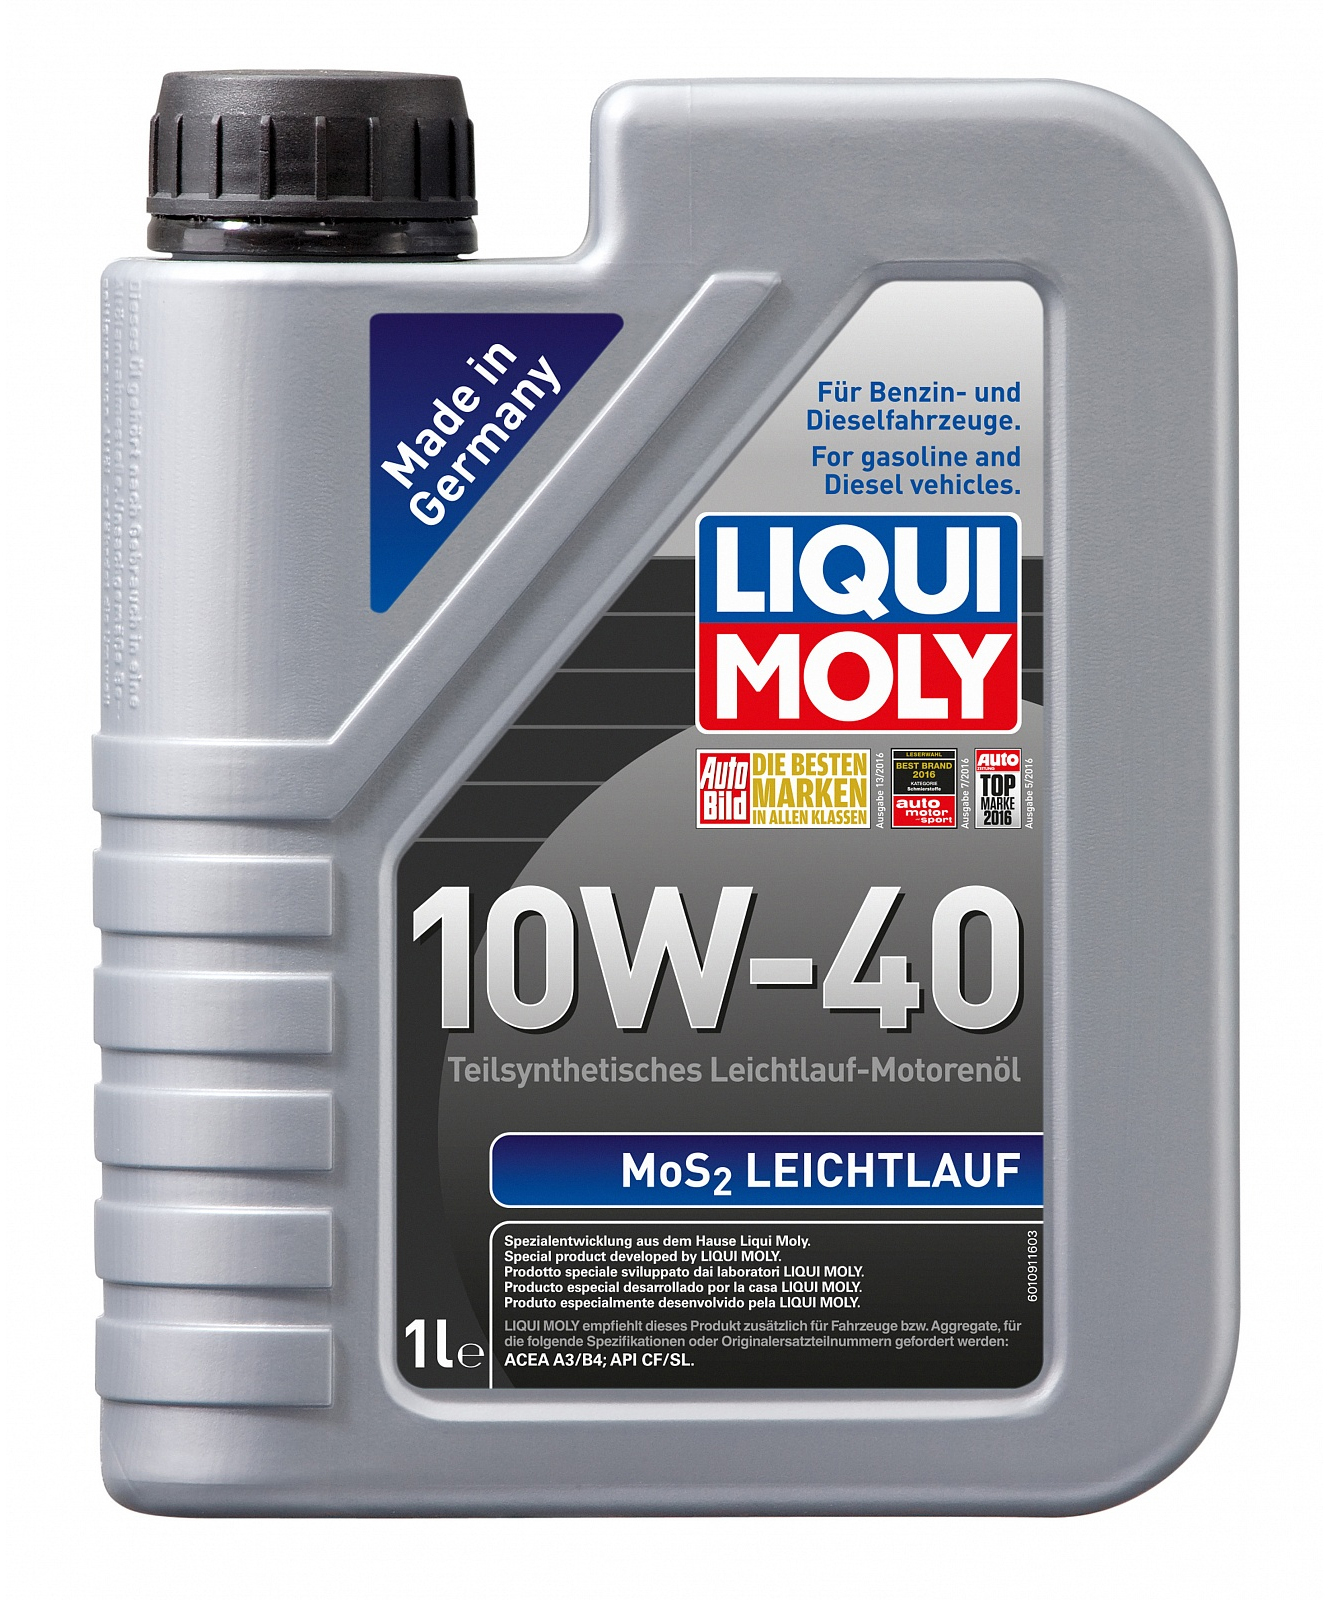 Купить моторное масло Liqui Moly MoS2 Leichtlauf 10W-40 1 л в Черкассах